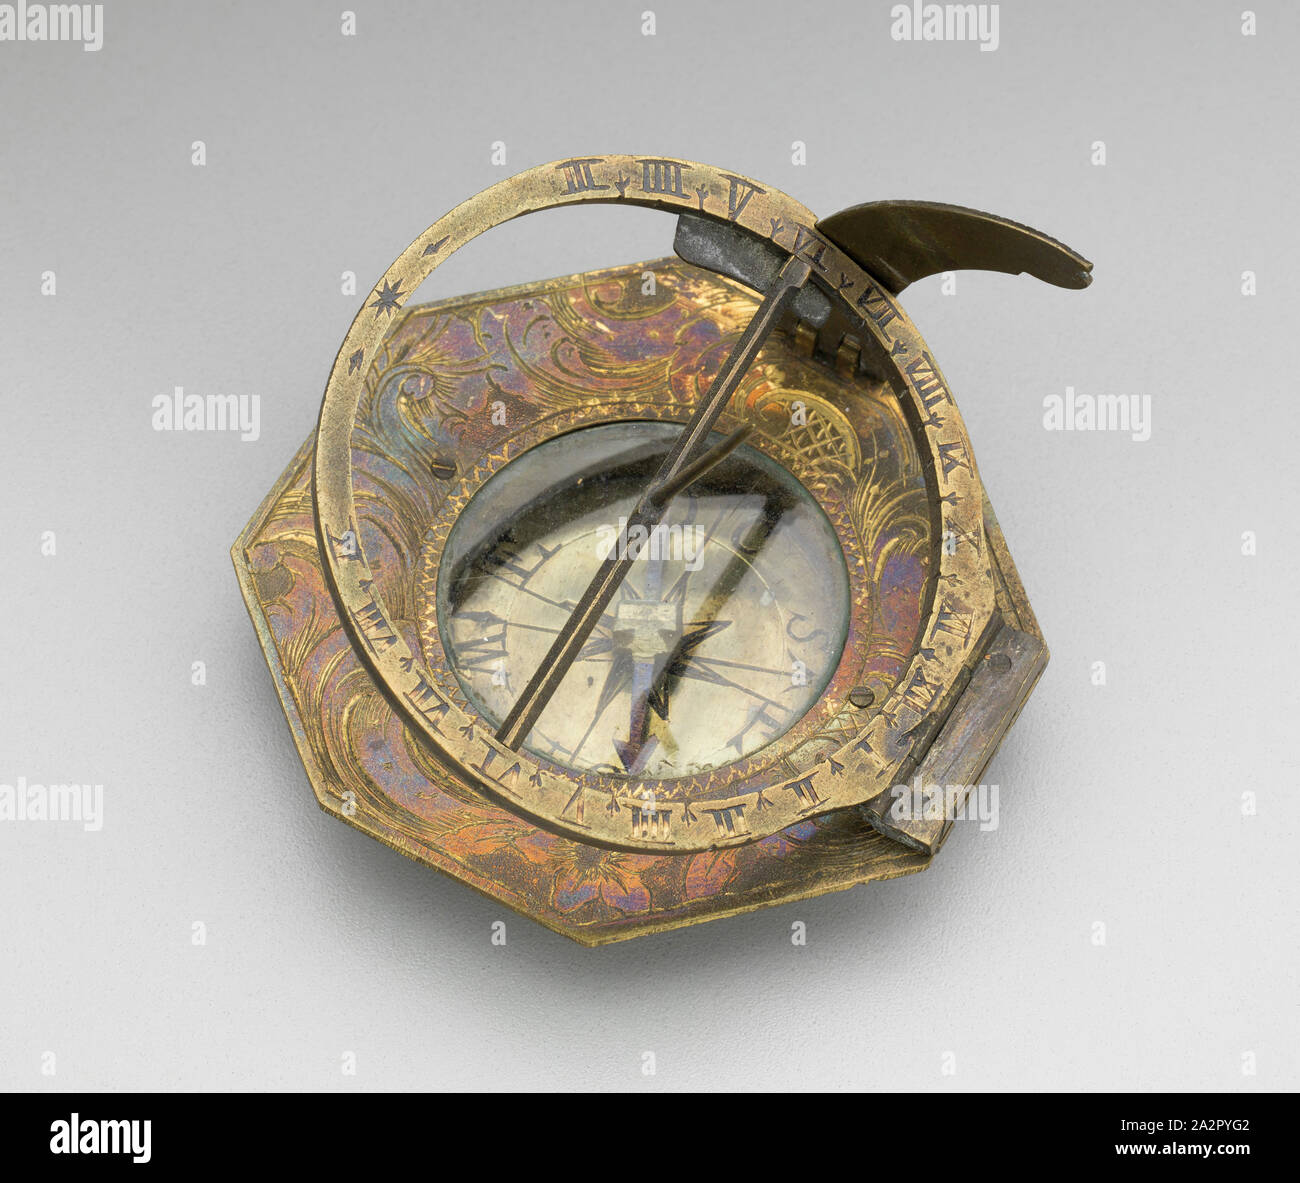 Reloj solar de bolsillo Nuremberg con rosa de los vientos